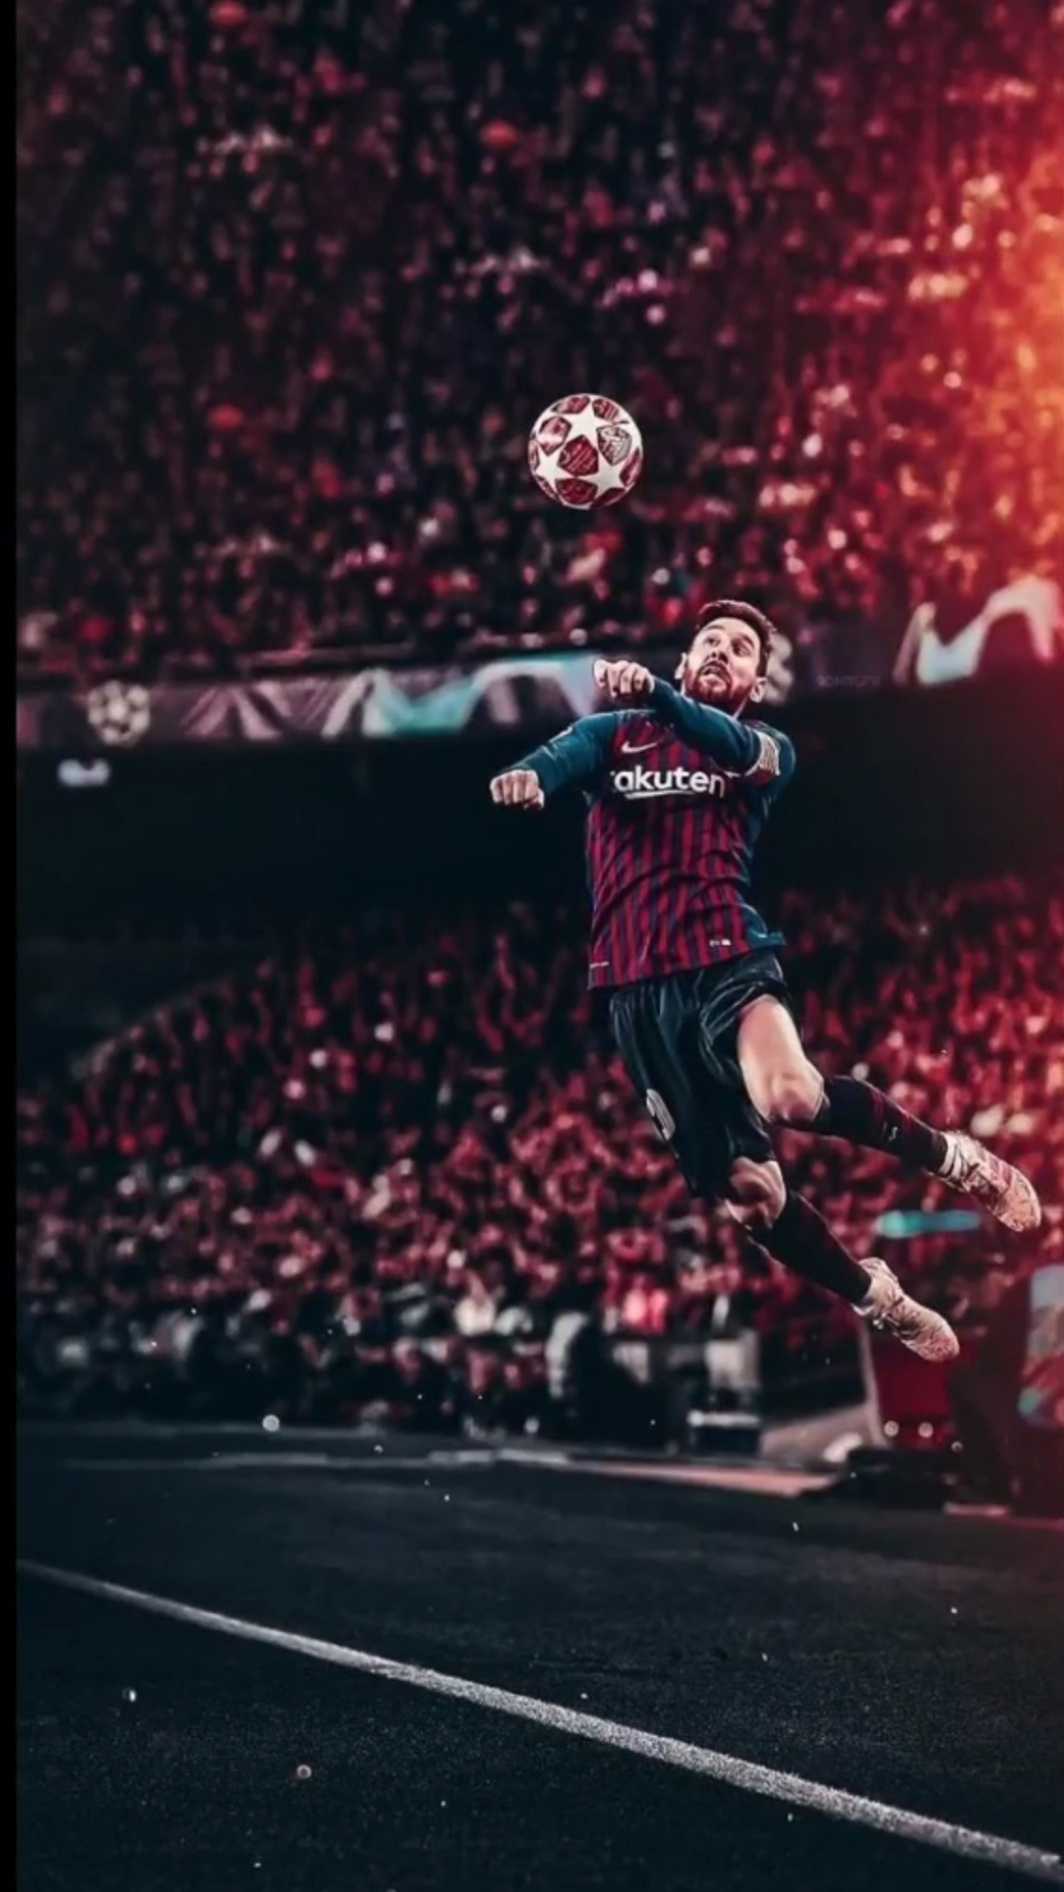 4K Messi Wallpaper: Ngắm những hình nền Lionel Messi đẹp tuyệt vời với độ phân giải 4K, chất lượng hình ảnh rõ nét, đầy sắc màu và tràn đầy cảm xúc. Hãy để đôi mắt mình được thư giãn bằng hình ảnh của siêu sao này.